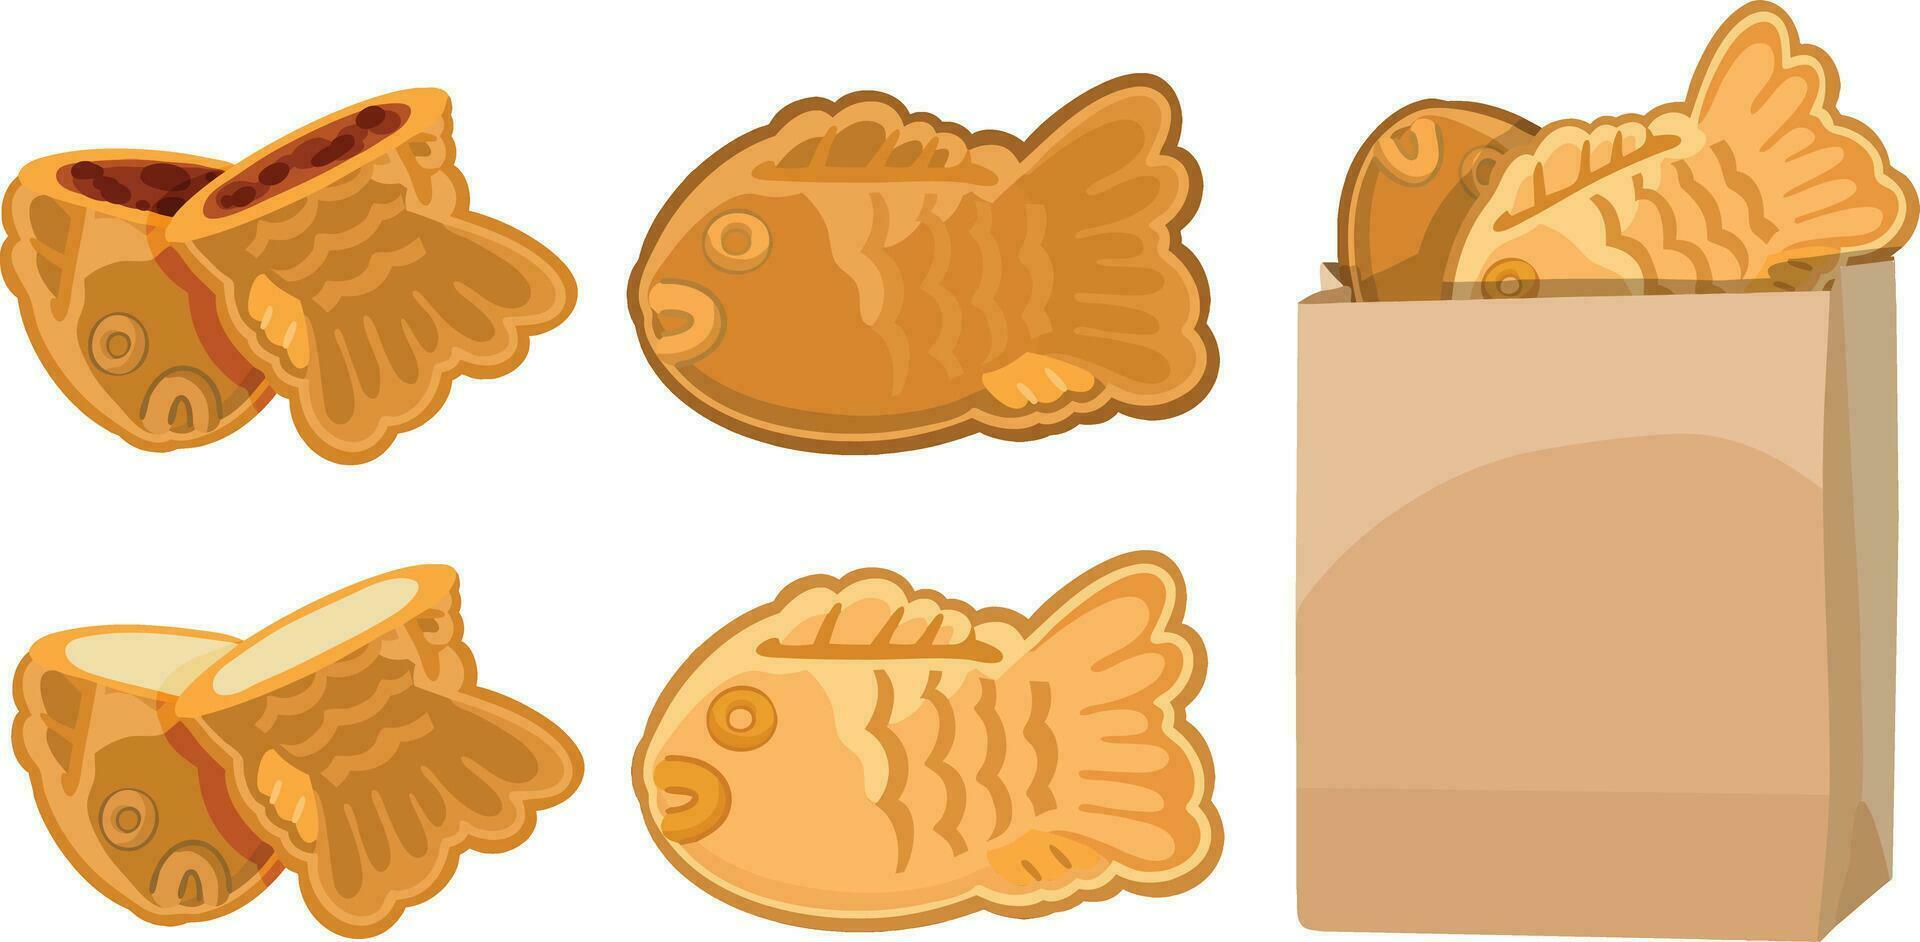 bungeoppang, koreanska fiskformad bröd. koreanska mellanmål illustration vektor. vektor